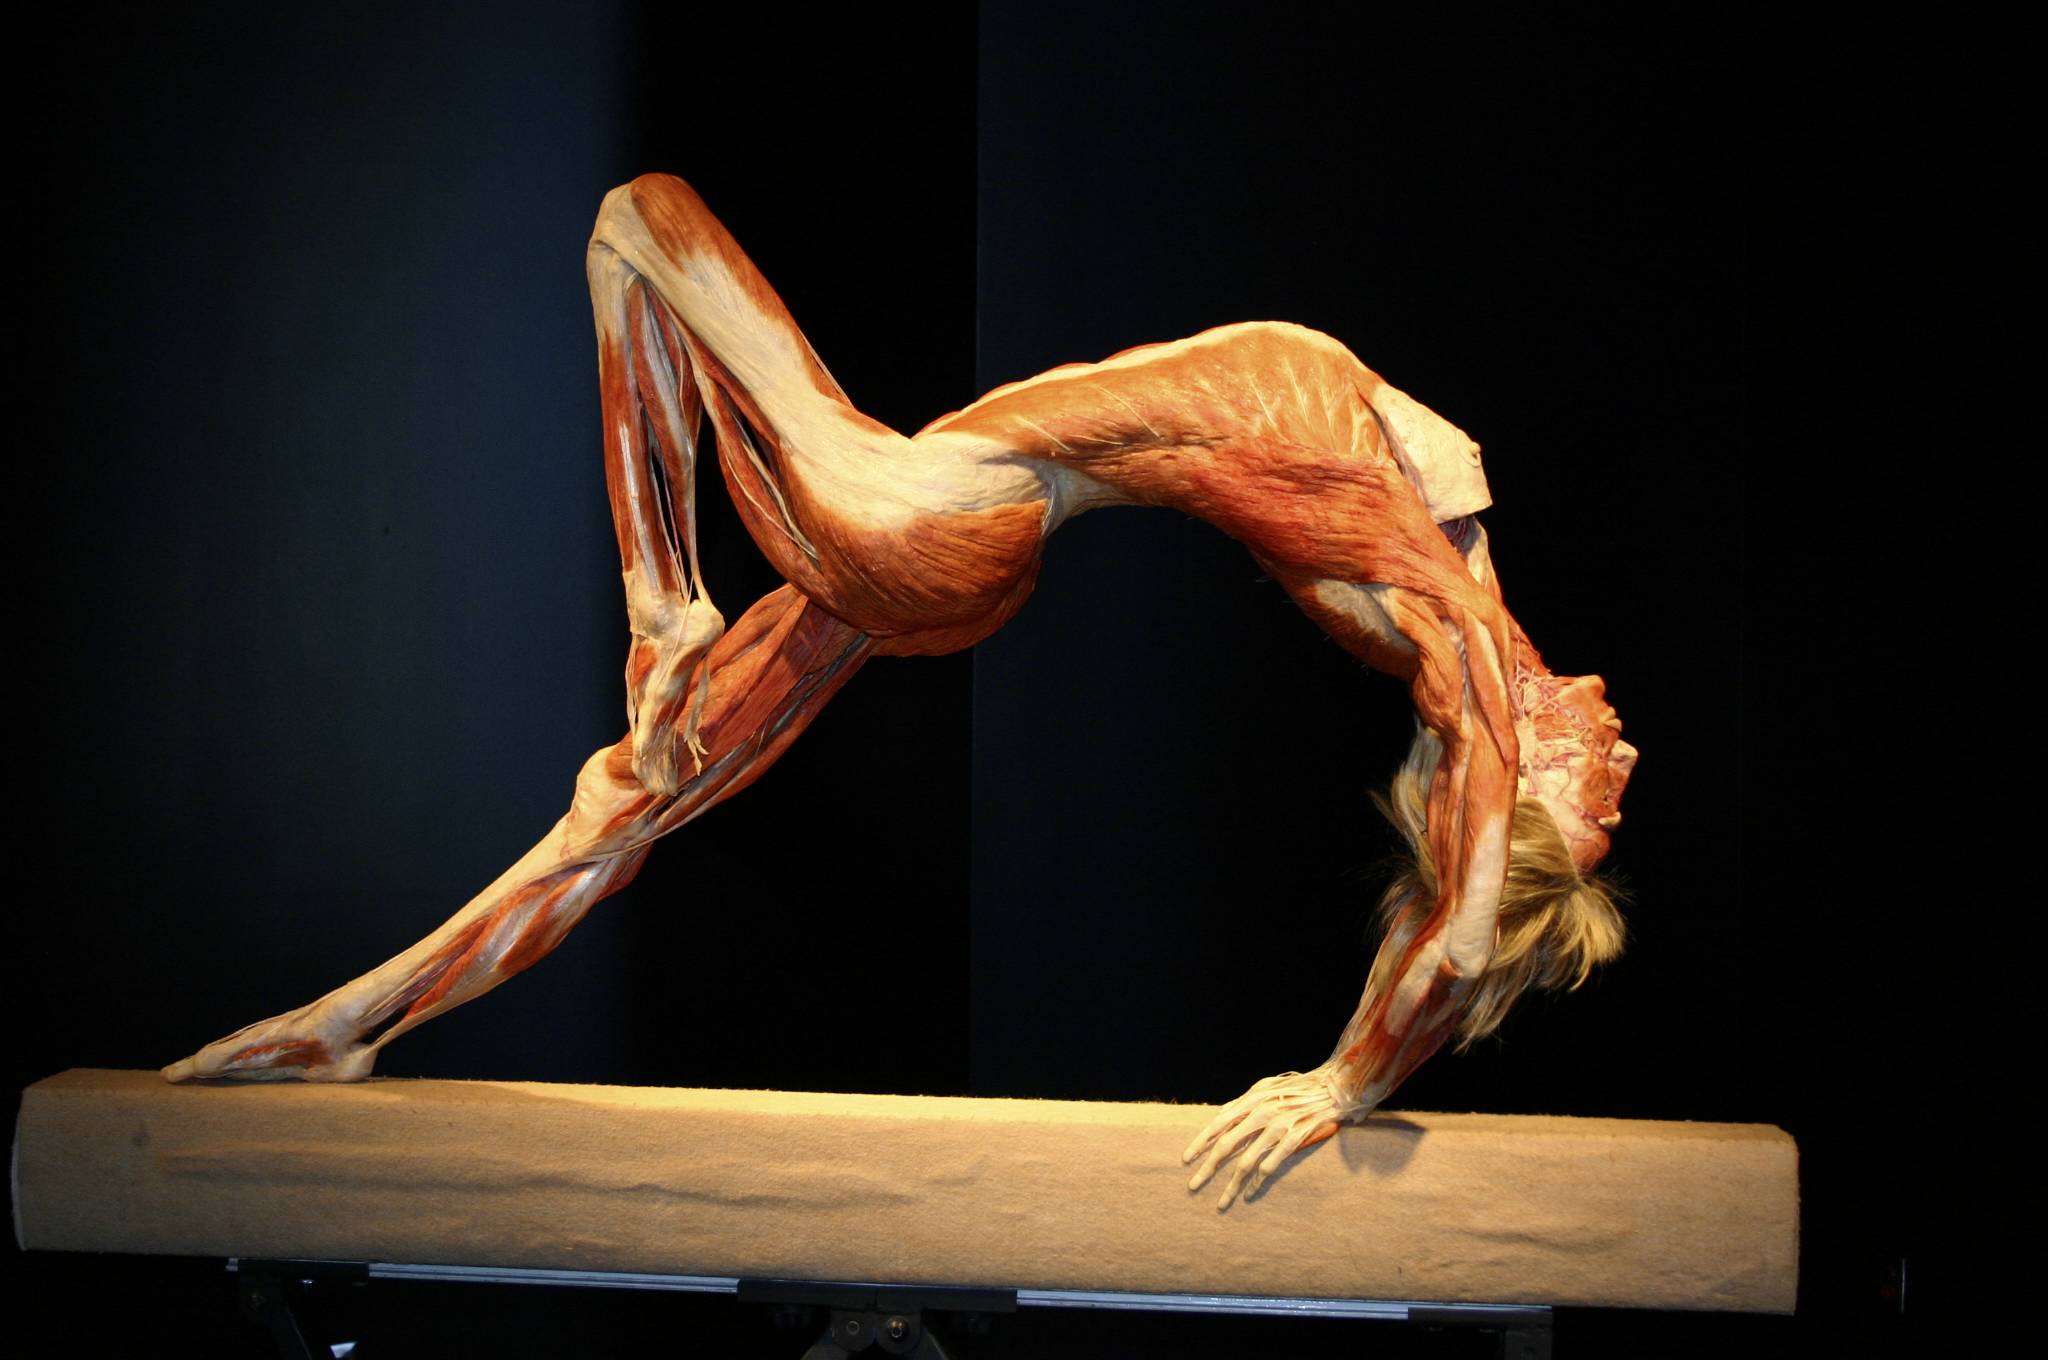 fond d'écran du corps humain,performance,acrobaties,mouvement de danse athlétique,corps humain,épaule